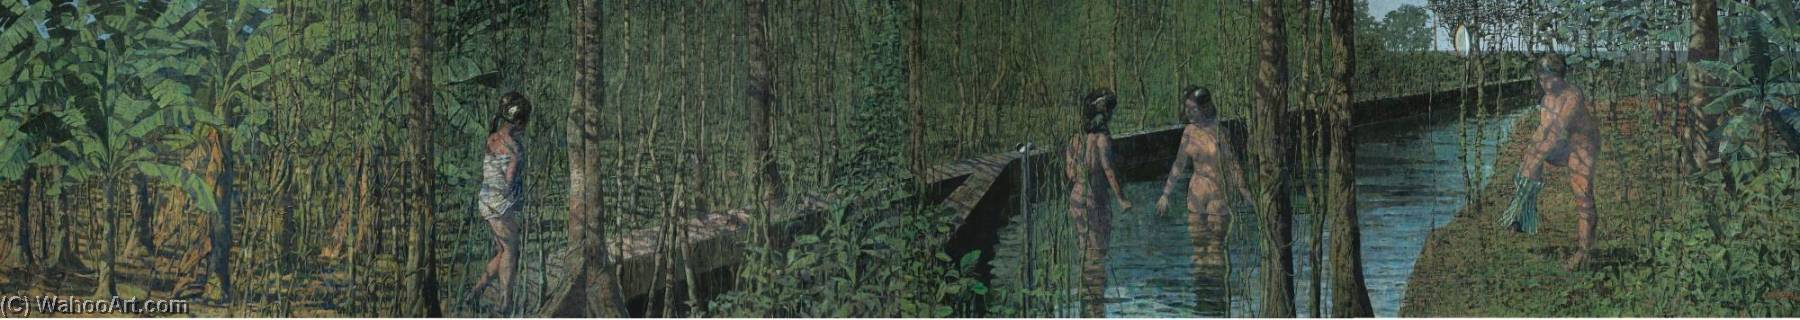 WikiOO.org - Encyclopedia of Fine Arts - Lukisan, Artwork Armando Morales - Cuatro ba ntilde istas en canal de plantación